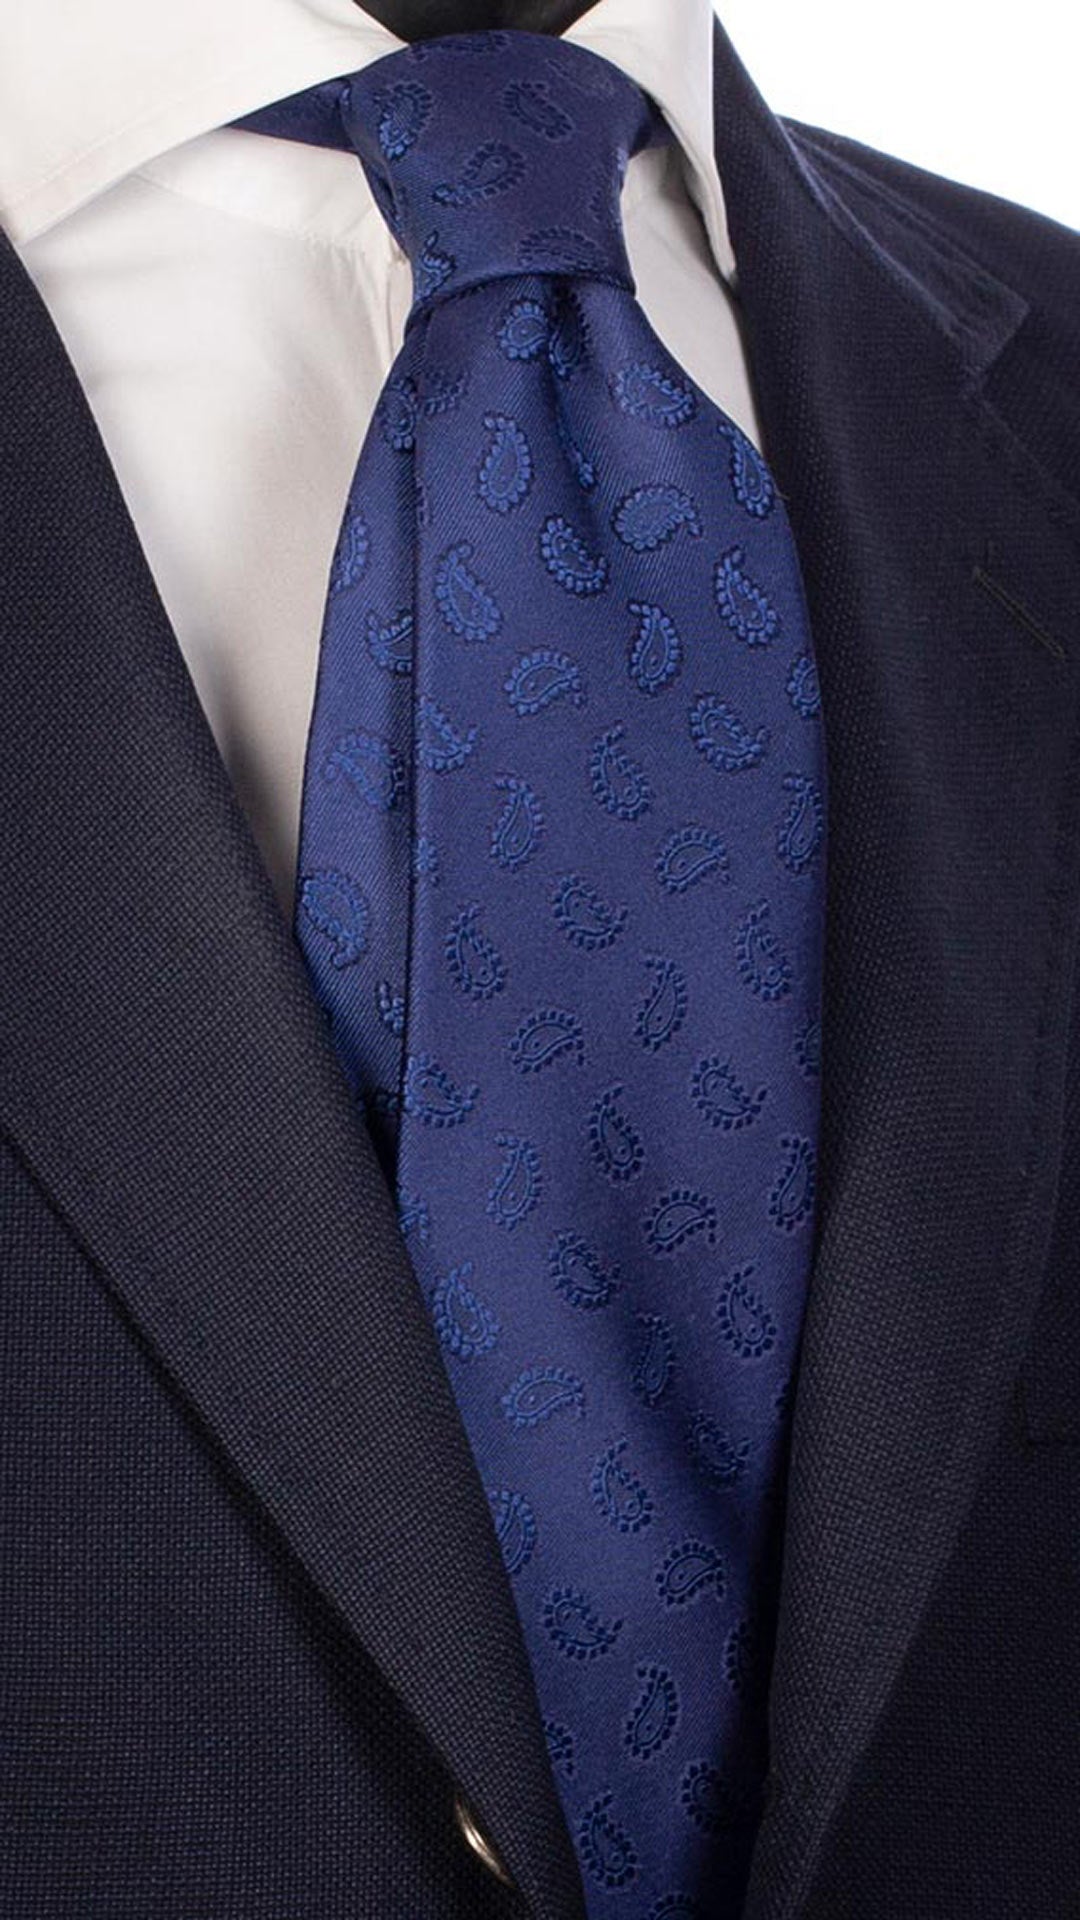 Cravatta da Cerimonia di Seta Bluette Paisley Tono Su Tono CY2797 Made in Italy Graffeo Cravatte